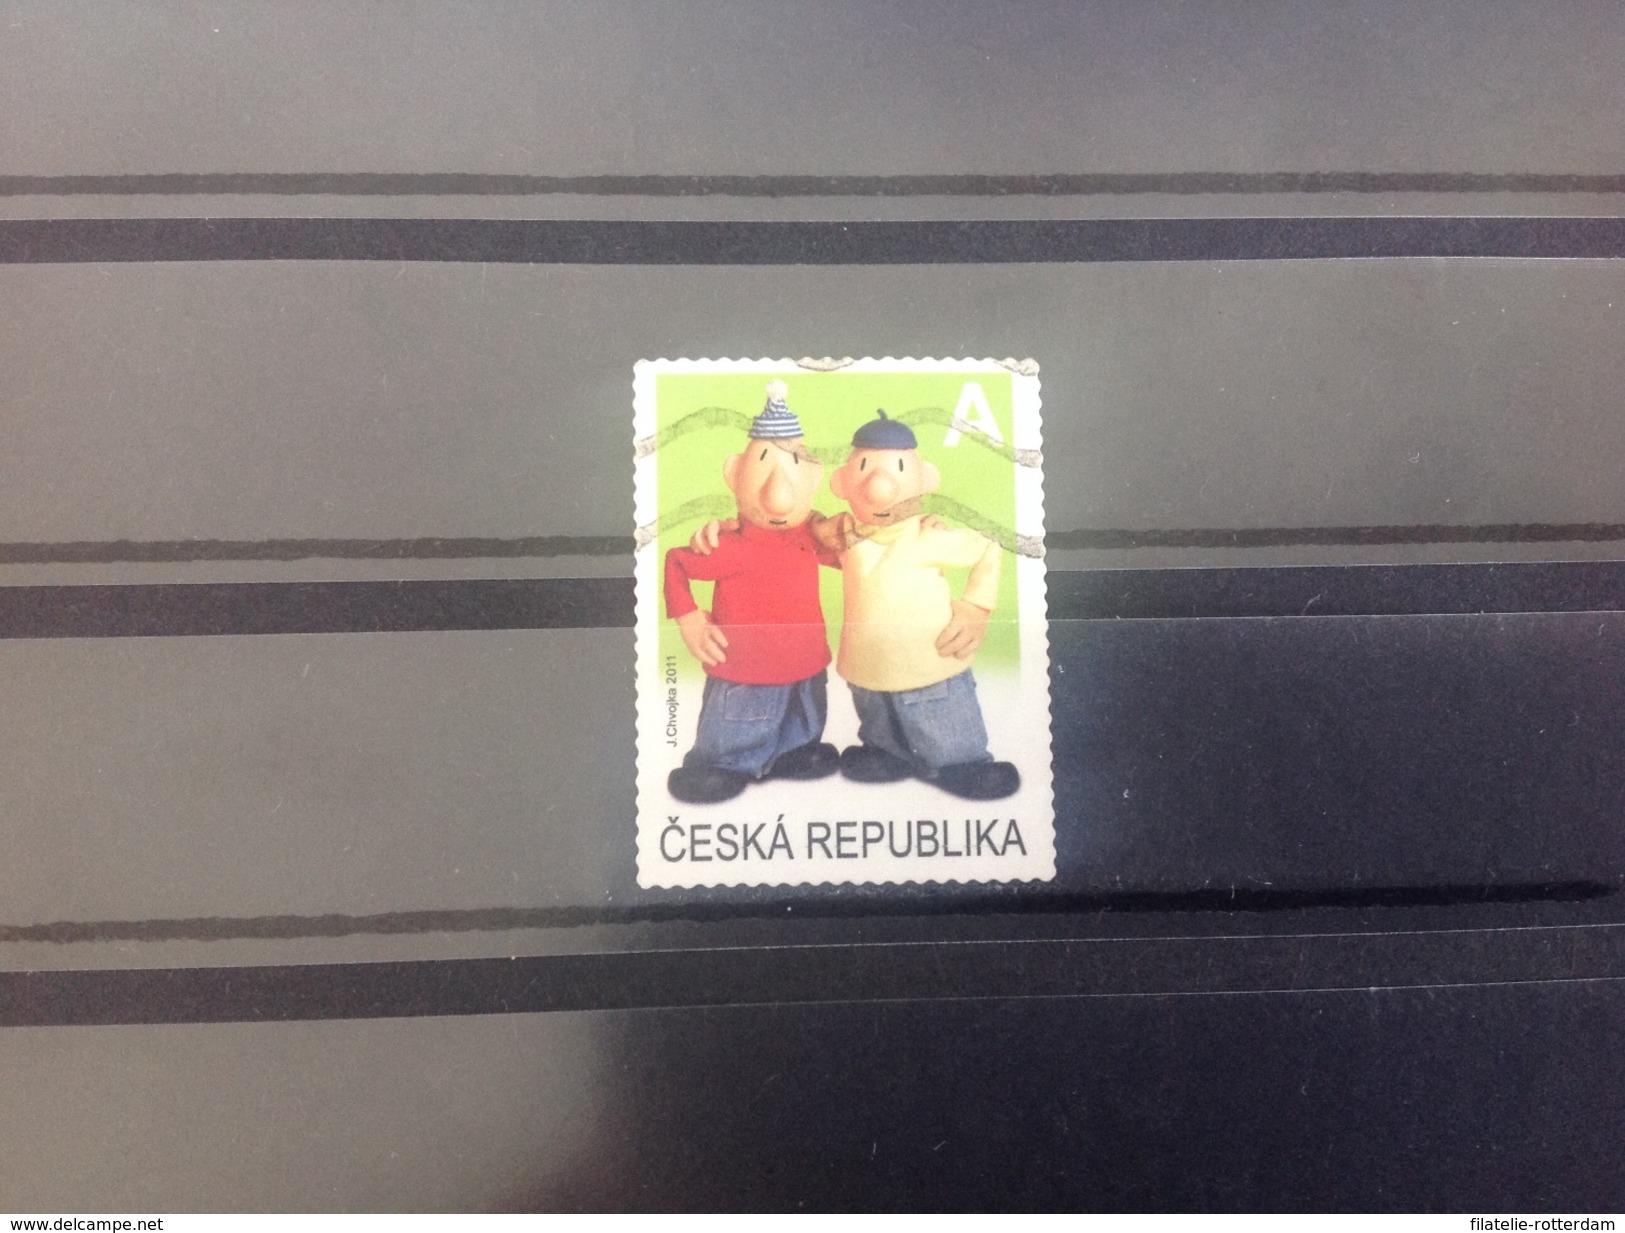 Tsjechië / Czech Republic - Tekenfilms (A) 2011 - Used Stamps